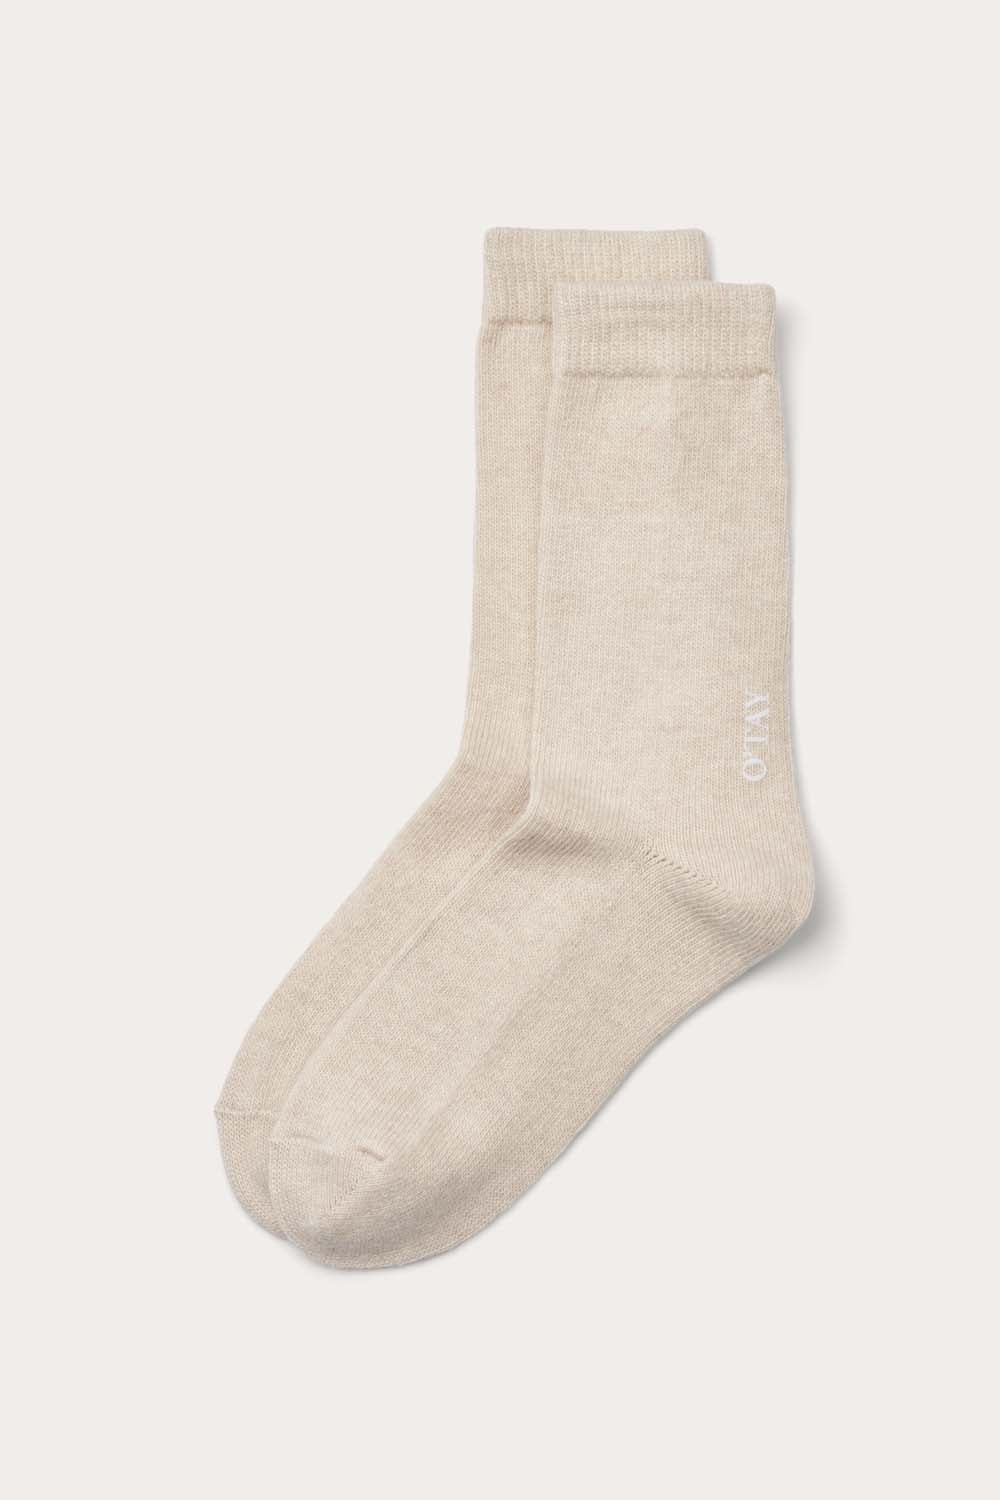 O'TAY Socks Blend Accessories Sandpiper